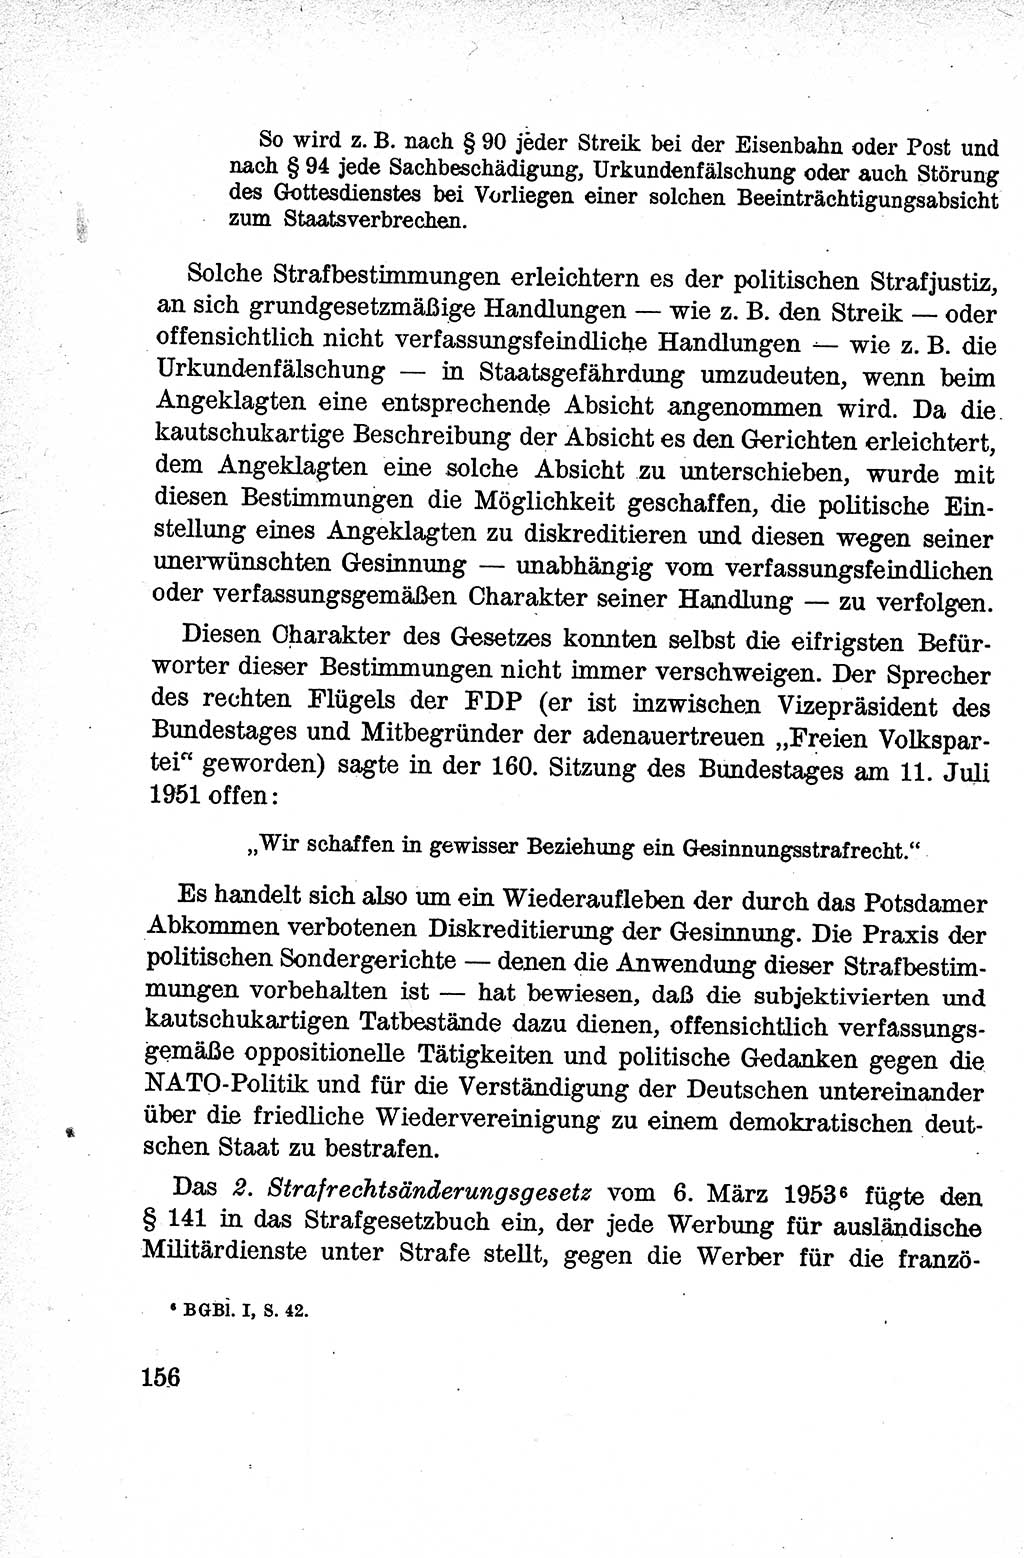 Lehrbuch des Strafrechts der Deutschen Demokratischen Republik (DDR), Allgemeiner Teil 1959, Seite 156 (Lb. Strafr. DDR AT 1959, S. 156)